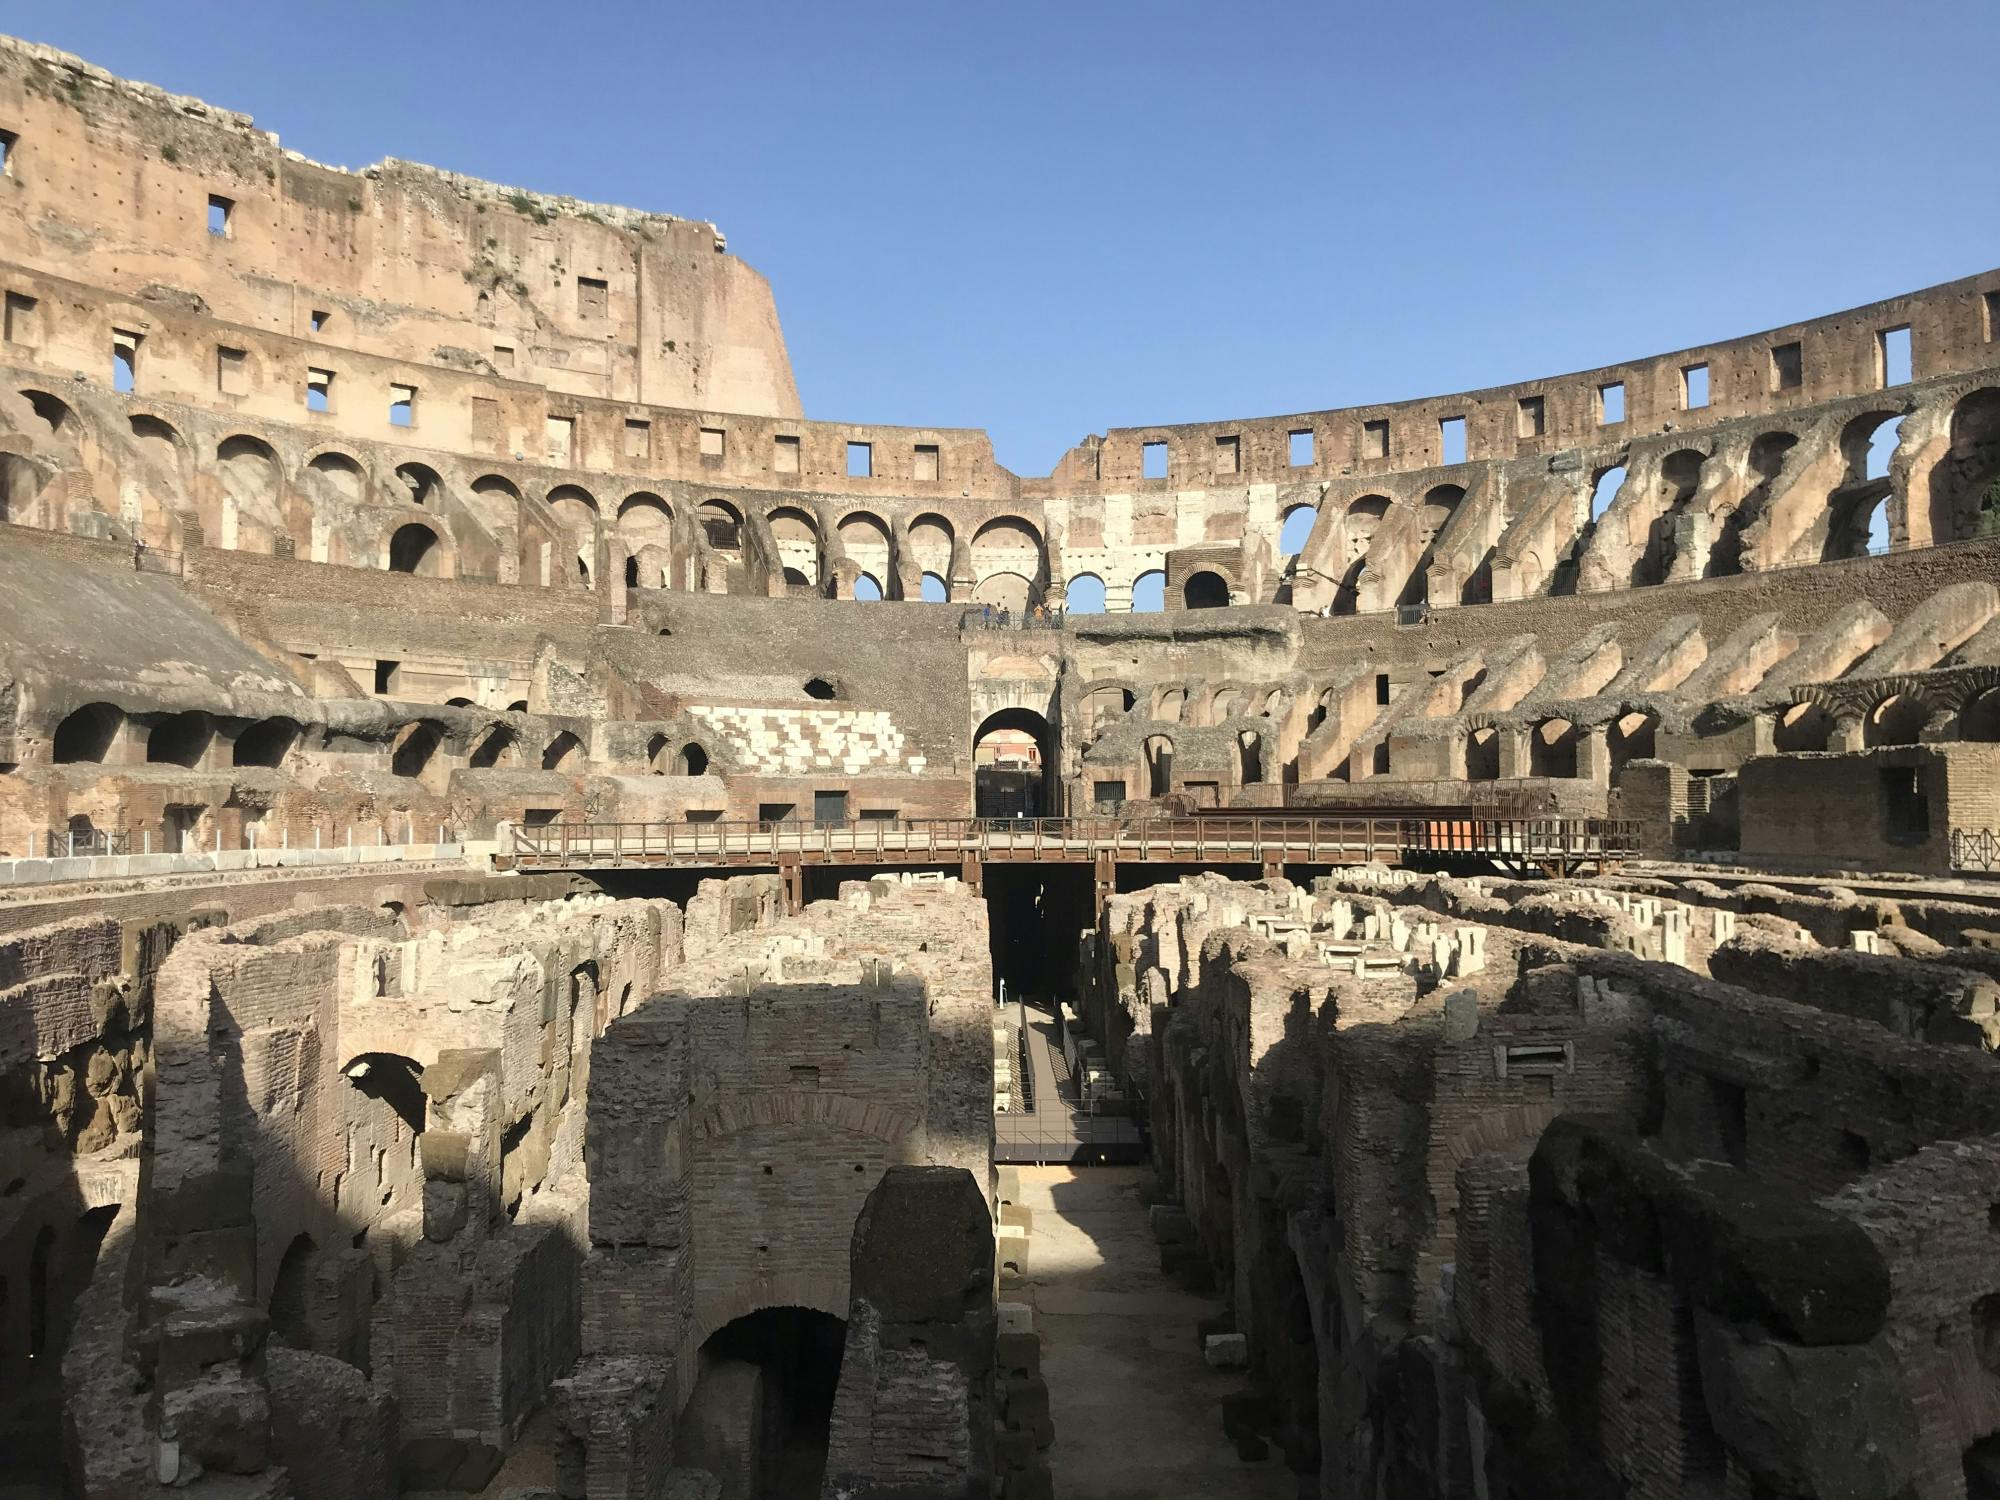 Wycieczka autobusowa Hop-on Hop-off po Rzymie i zarezerwowane wejście do Koloseum